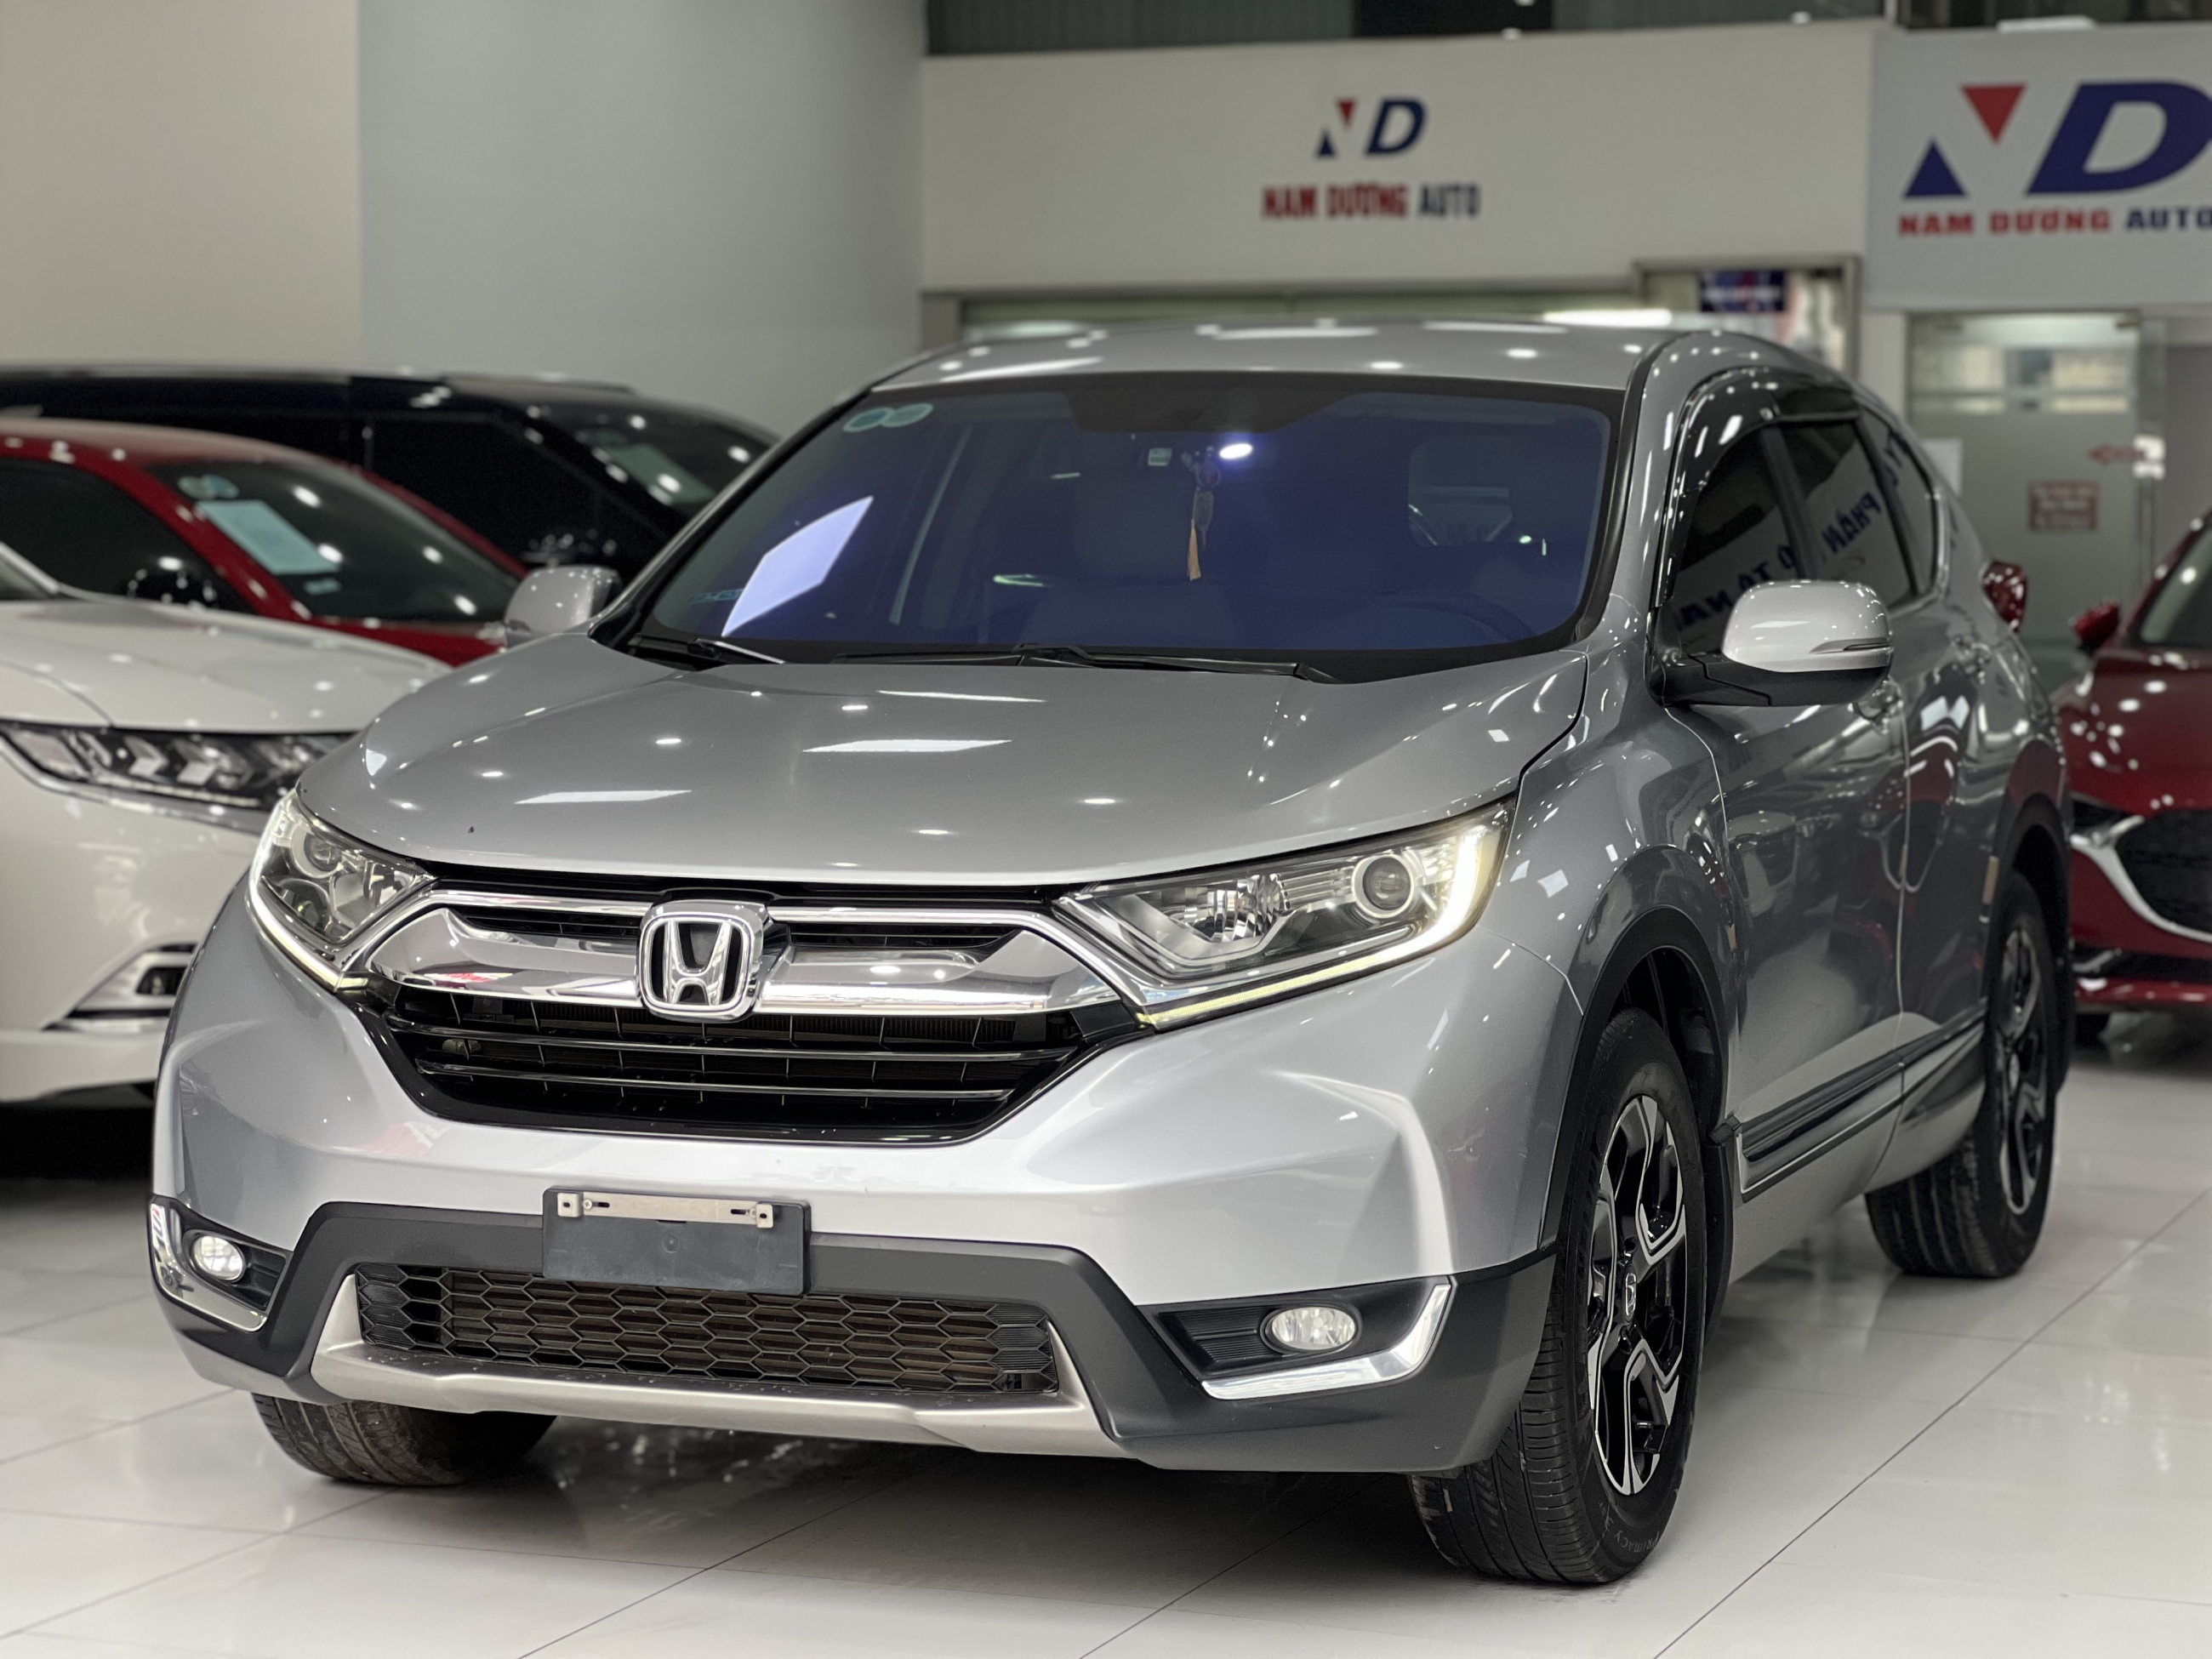 Honda CRV 1.5 E 2019